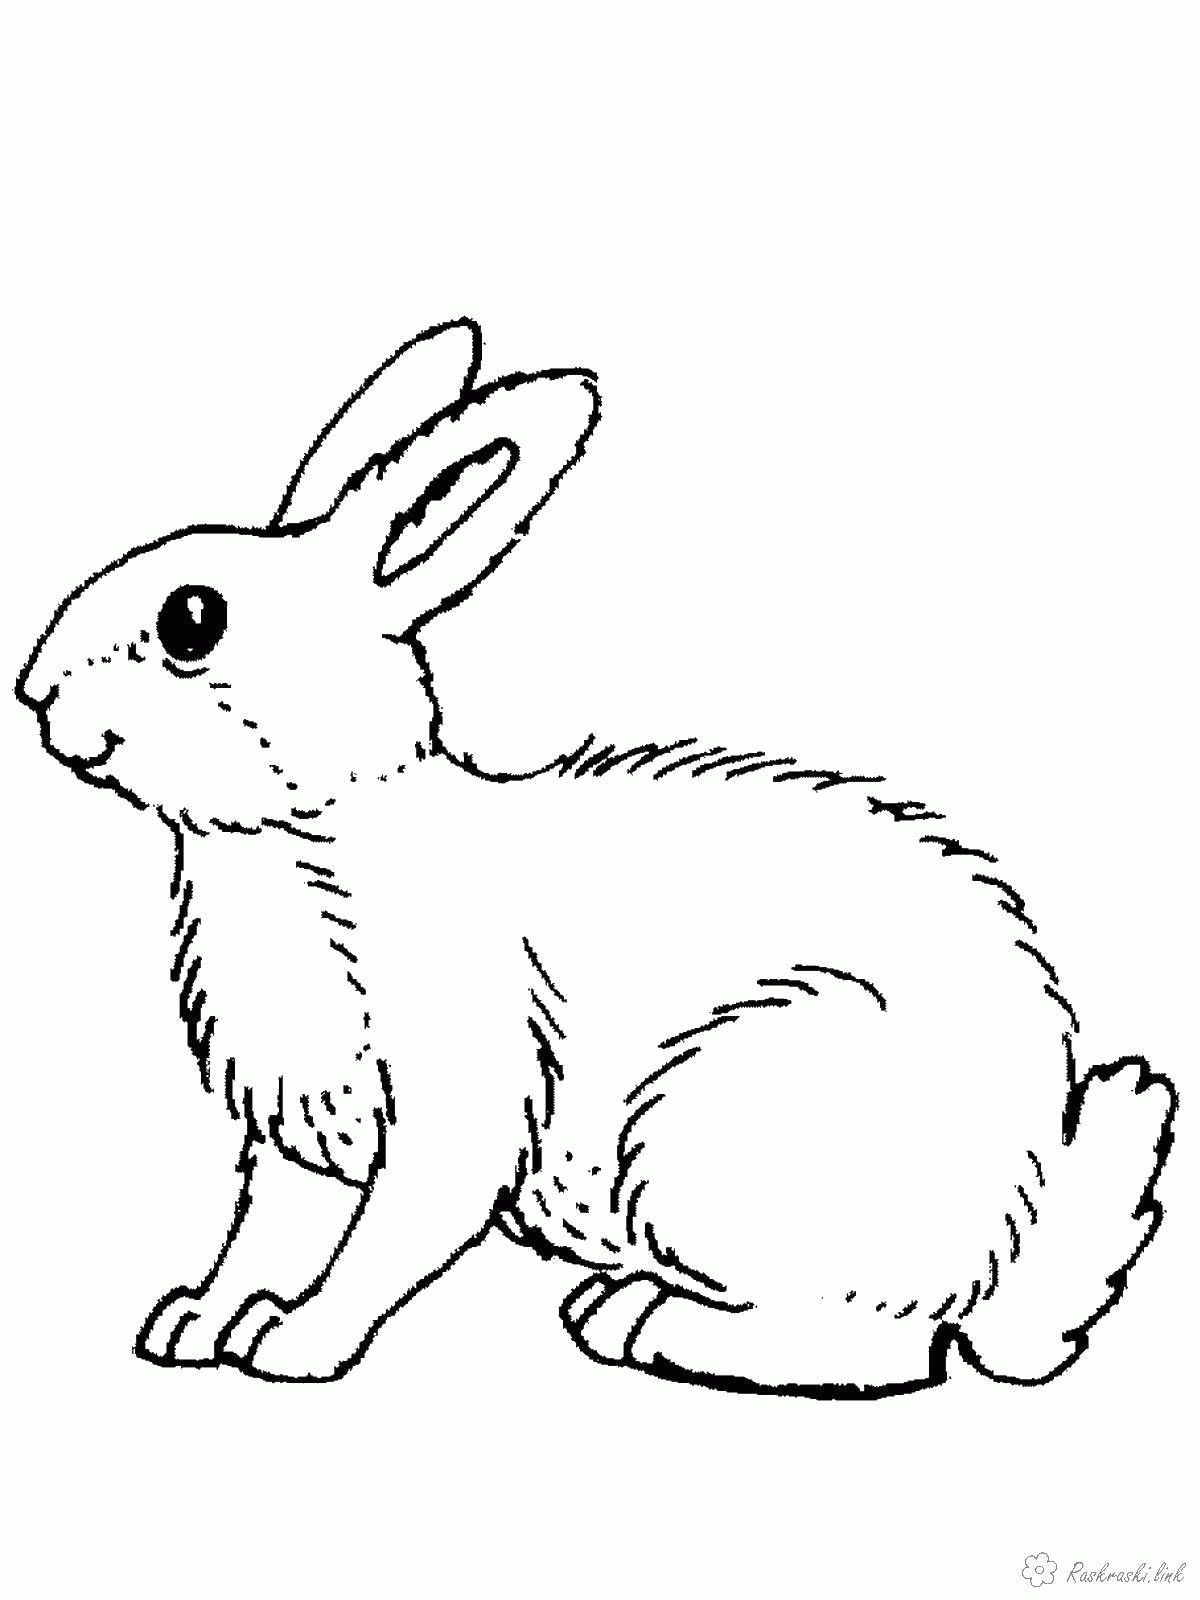 Название: Раскраска Название: Раскраска Кролик. Категория: дикие животные. Теги: кролик.. Категория: . Теги: .